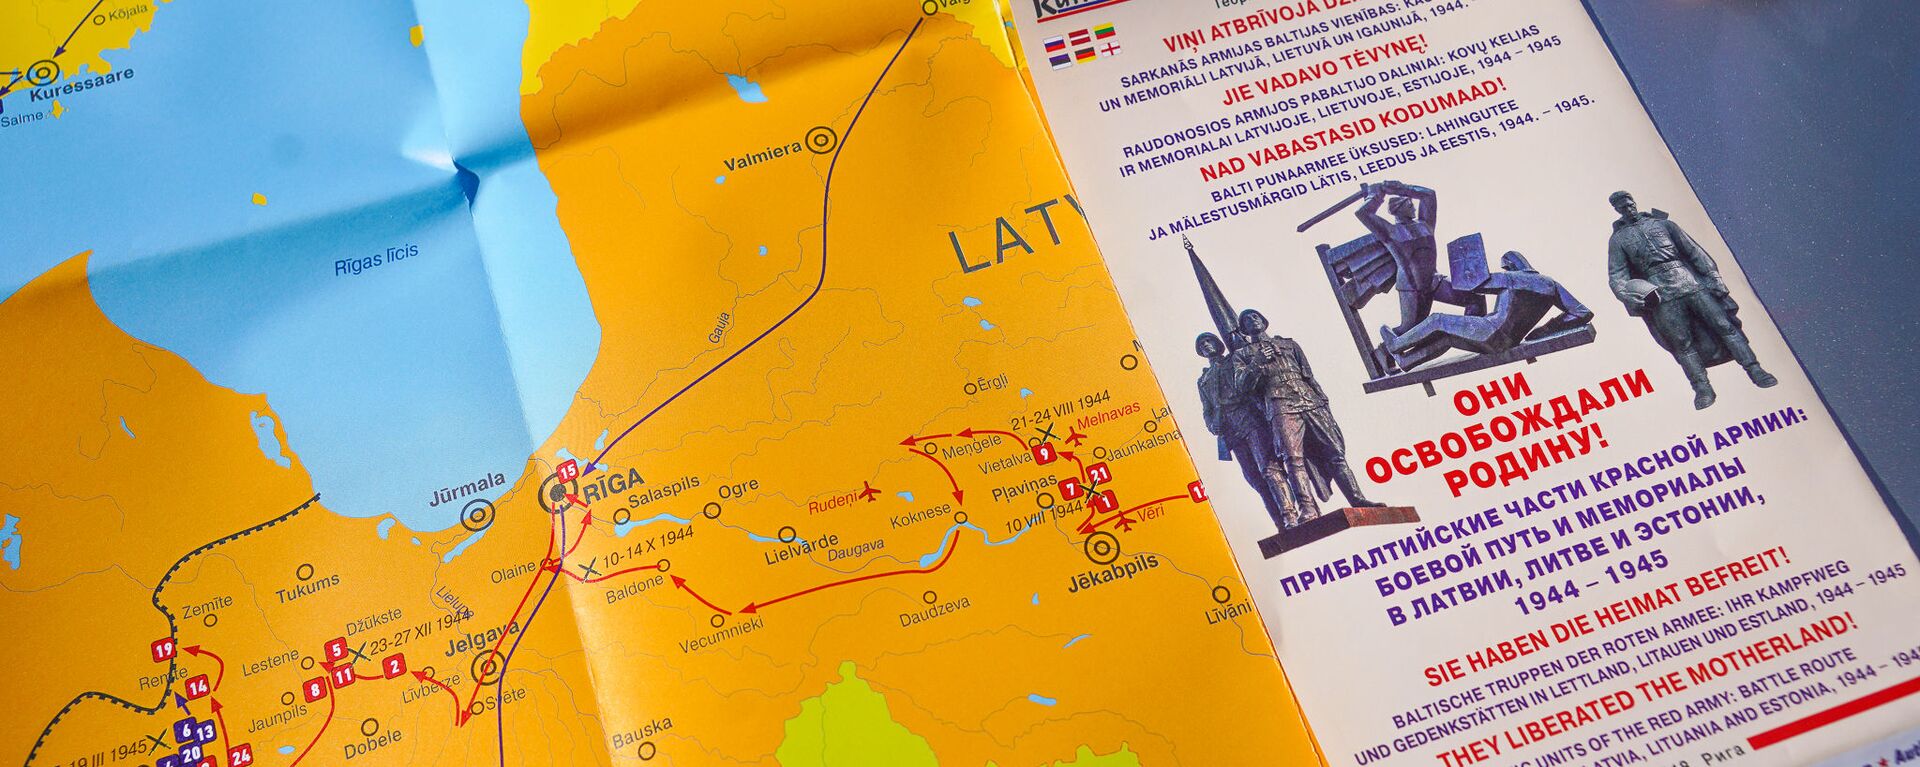 Карта боевого пути прибалтийских частей Красной армии в Латвии, Литве и Эстонии - Sputnik Латвия, 1920, 17.09.2019